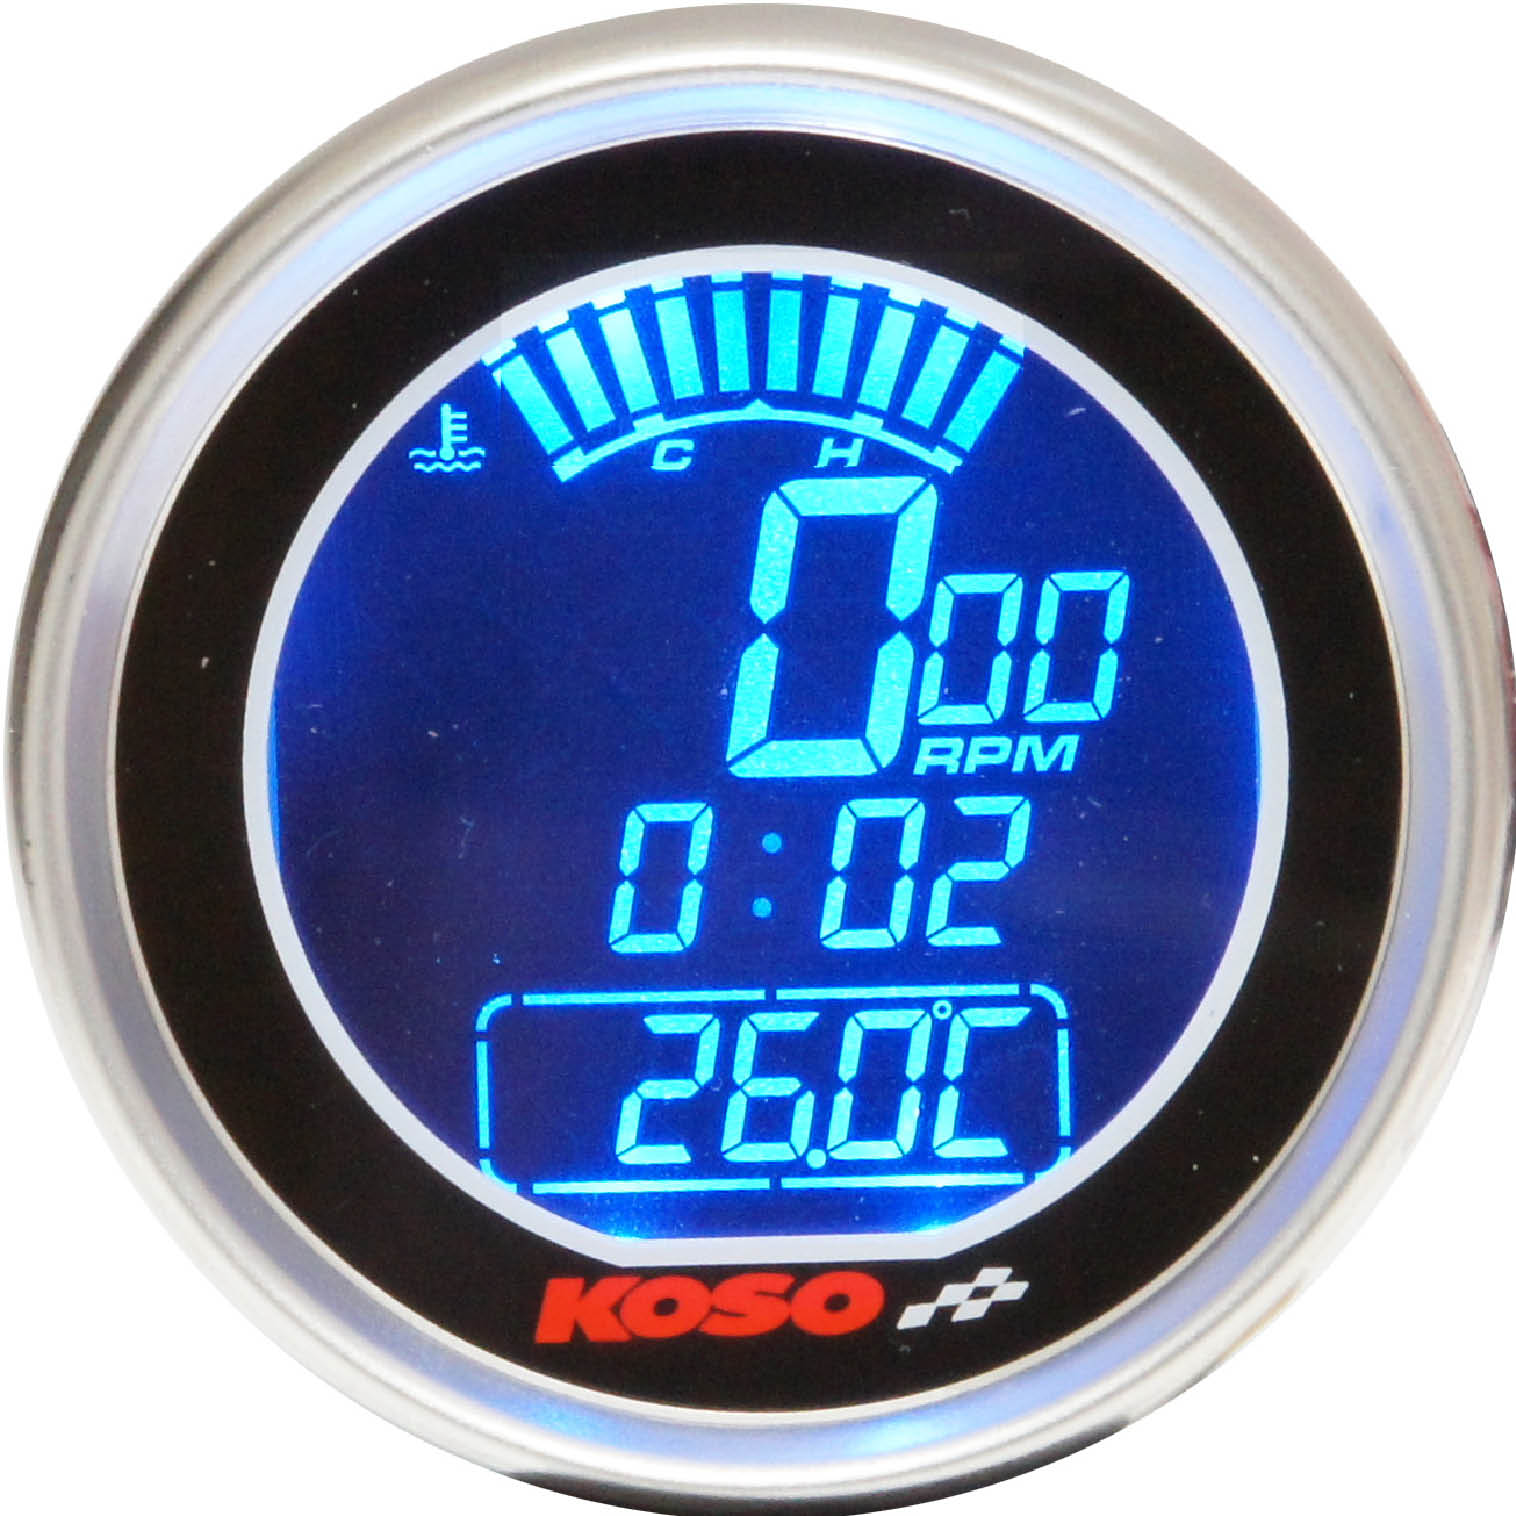 Digitaler Tacho/Thermometer/Uhr Schwarze Edelstahlfassung 61mm